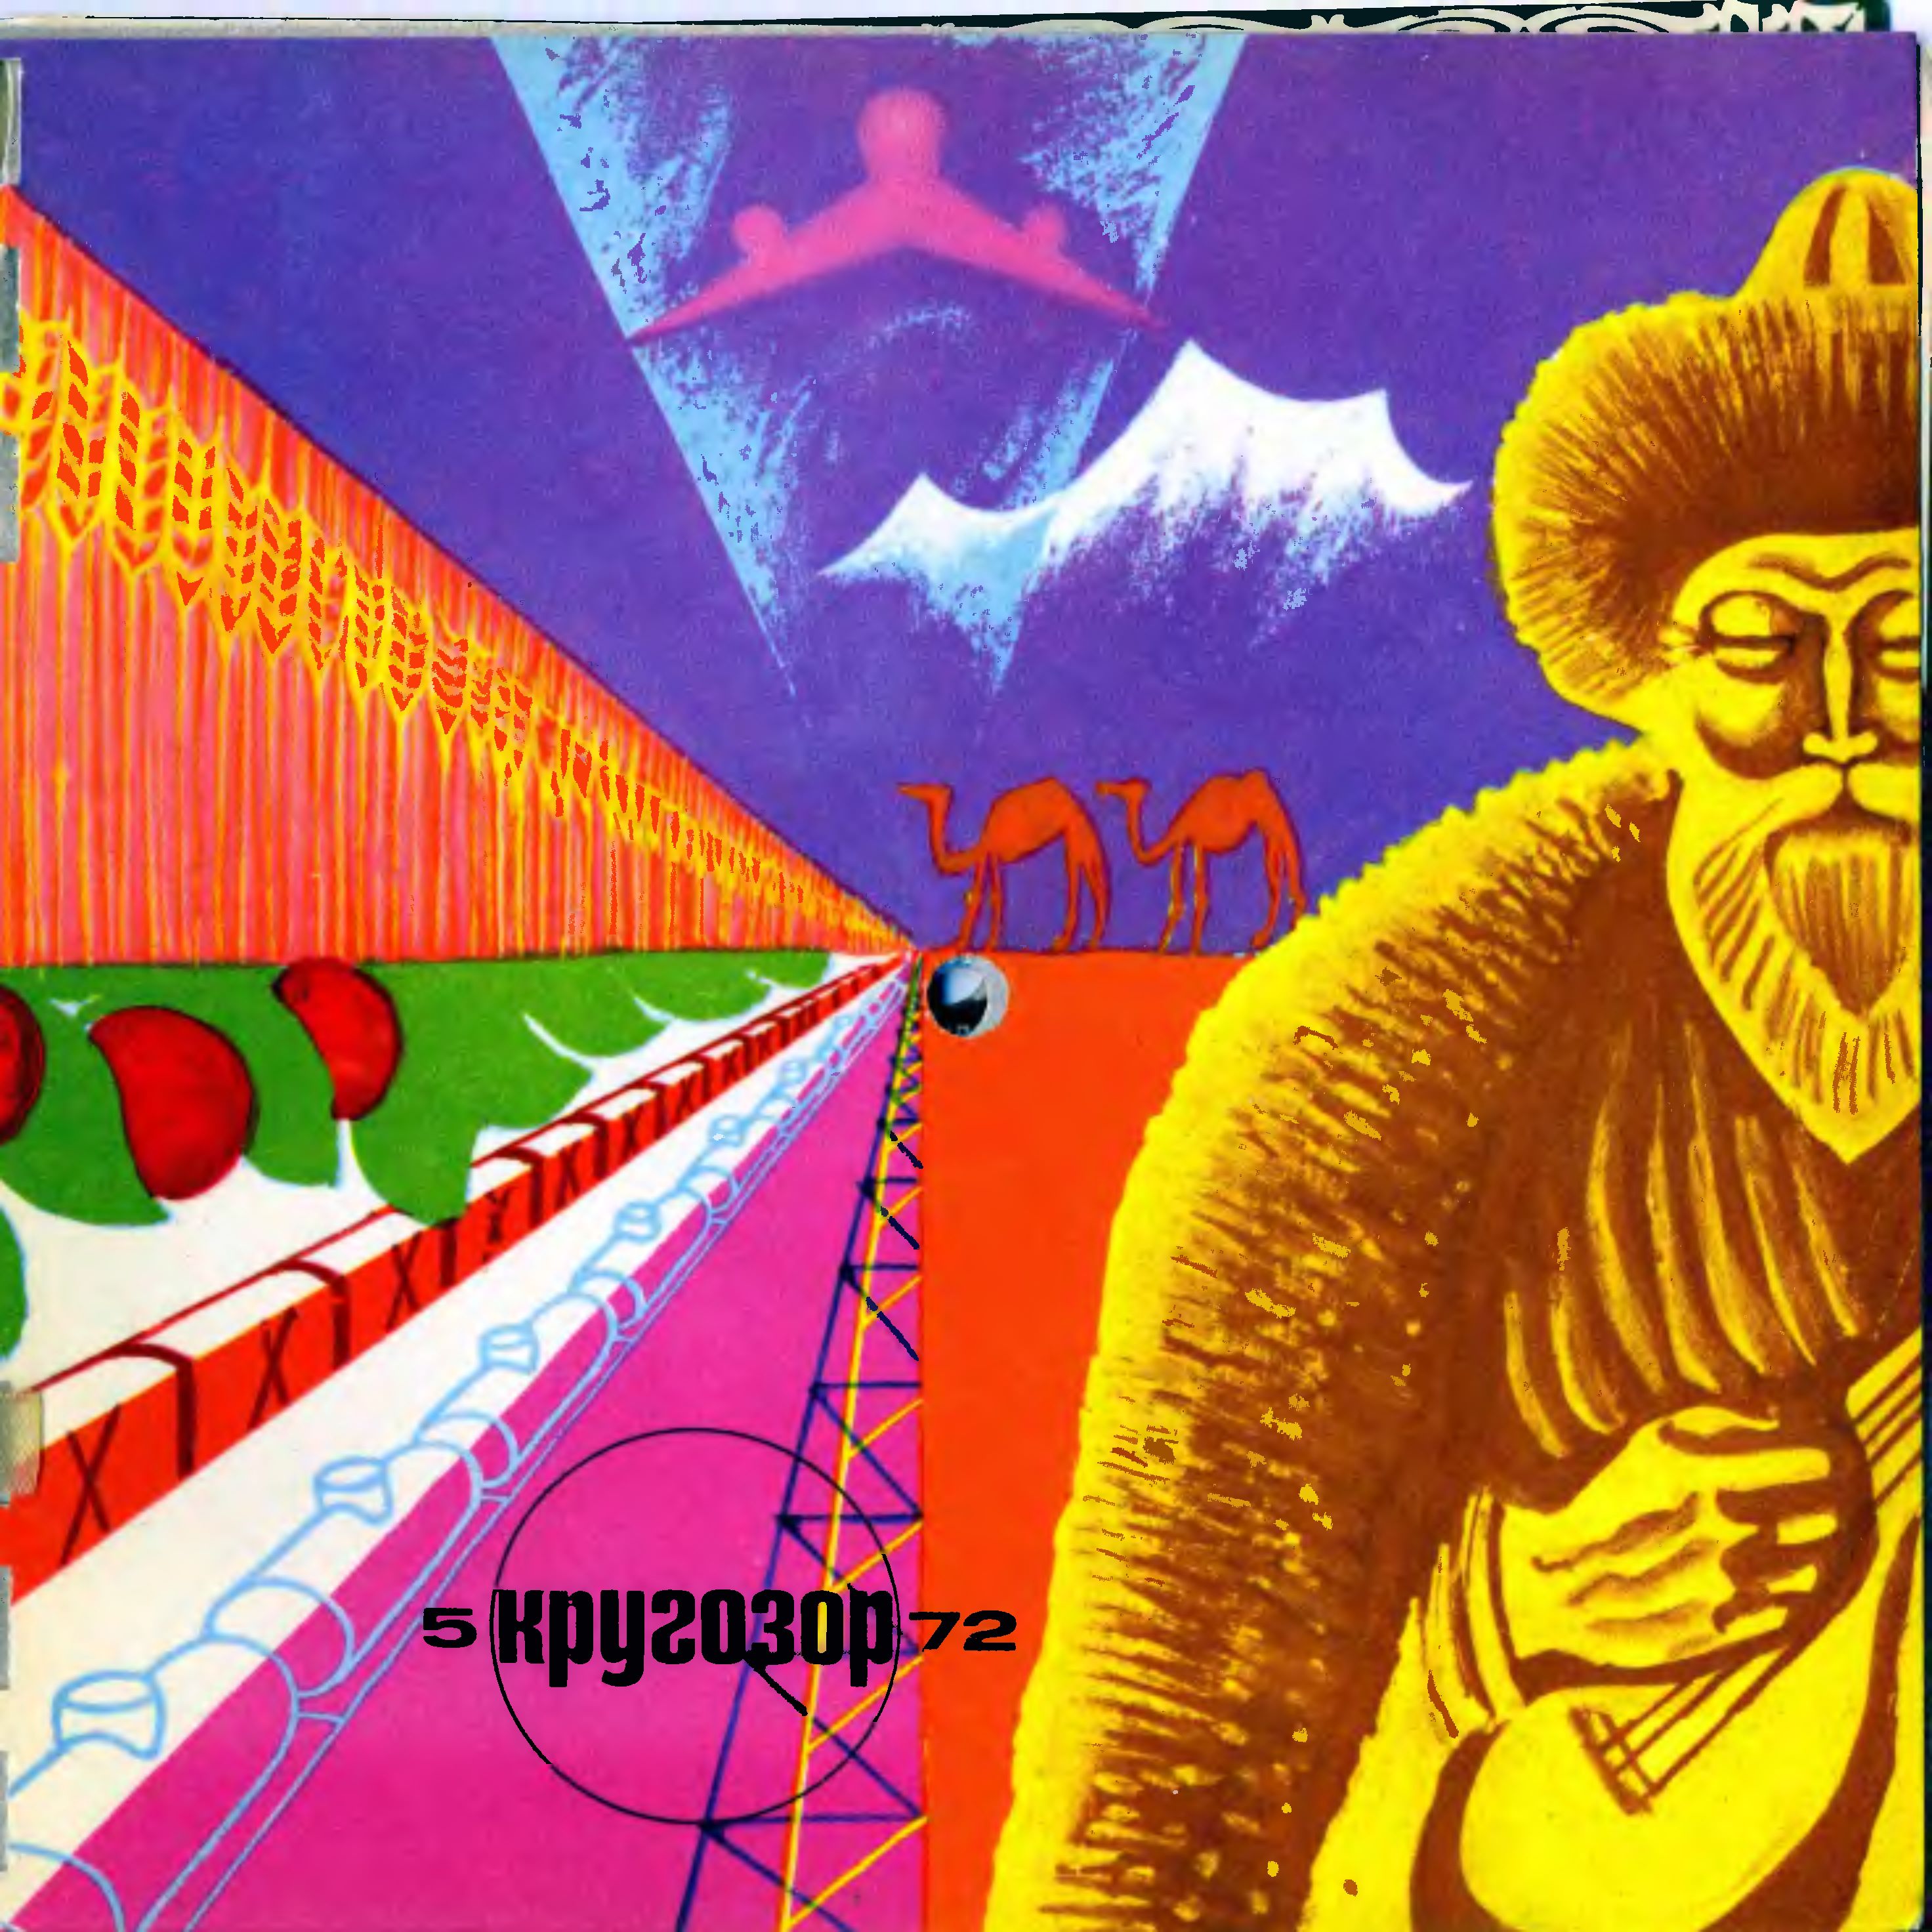 Кругозор 1972 №05